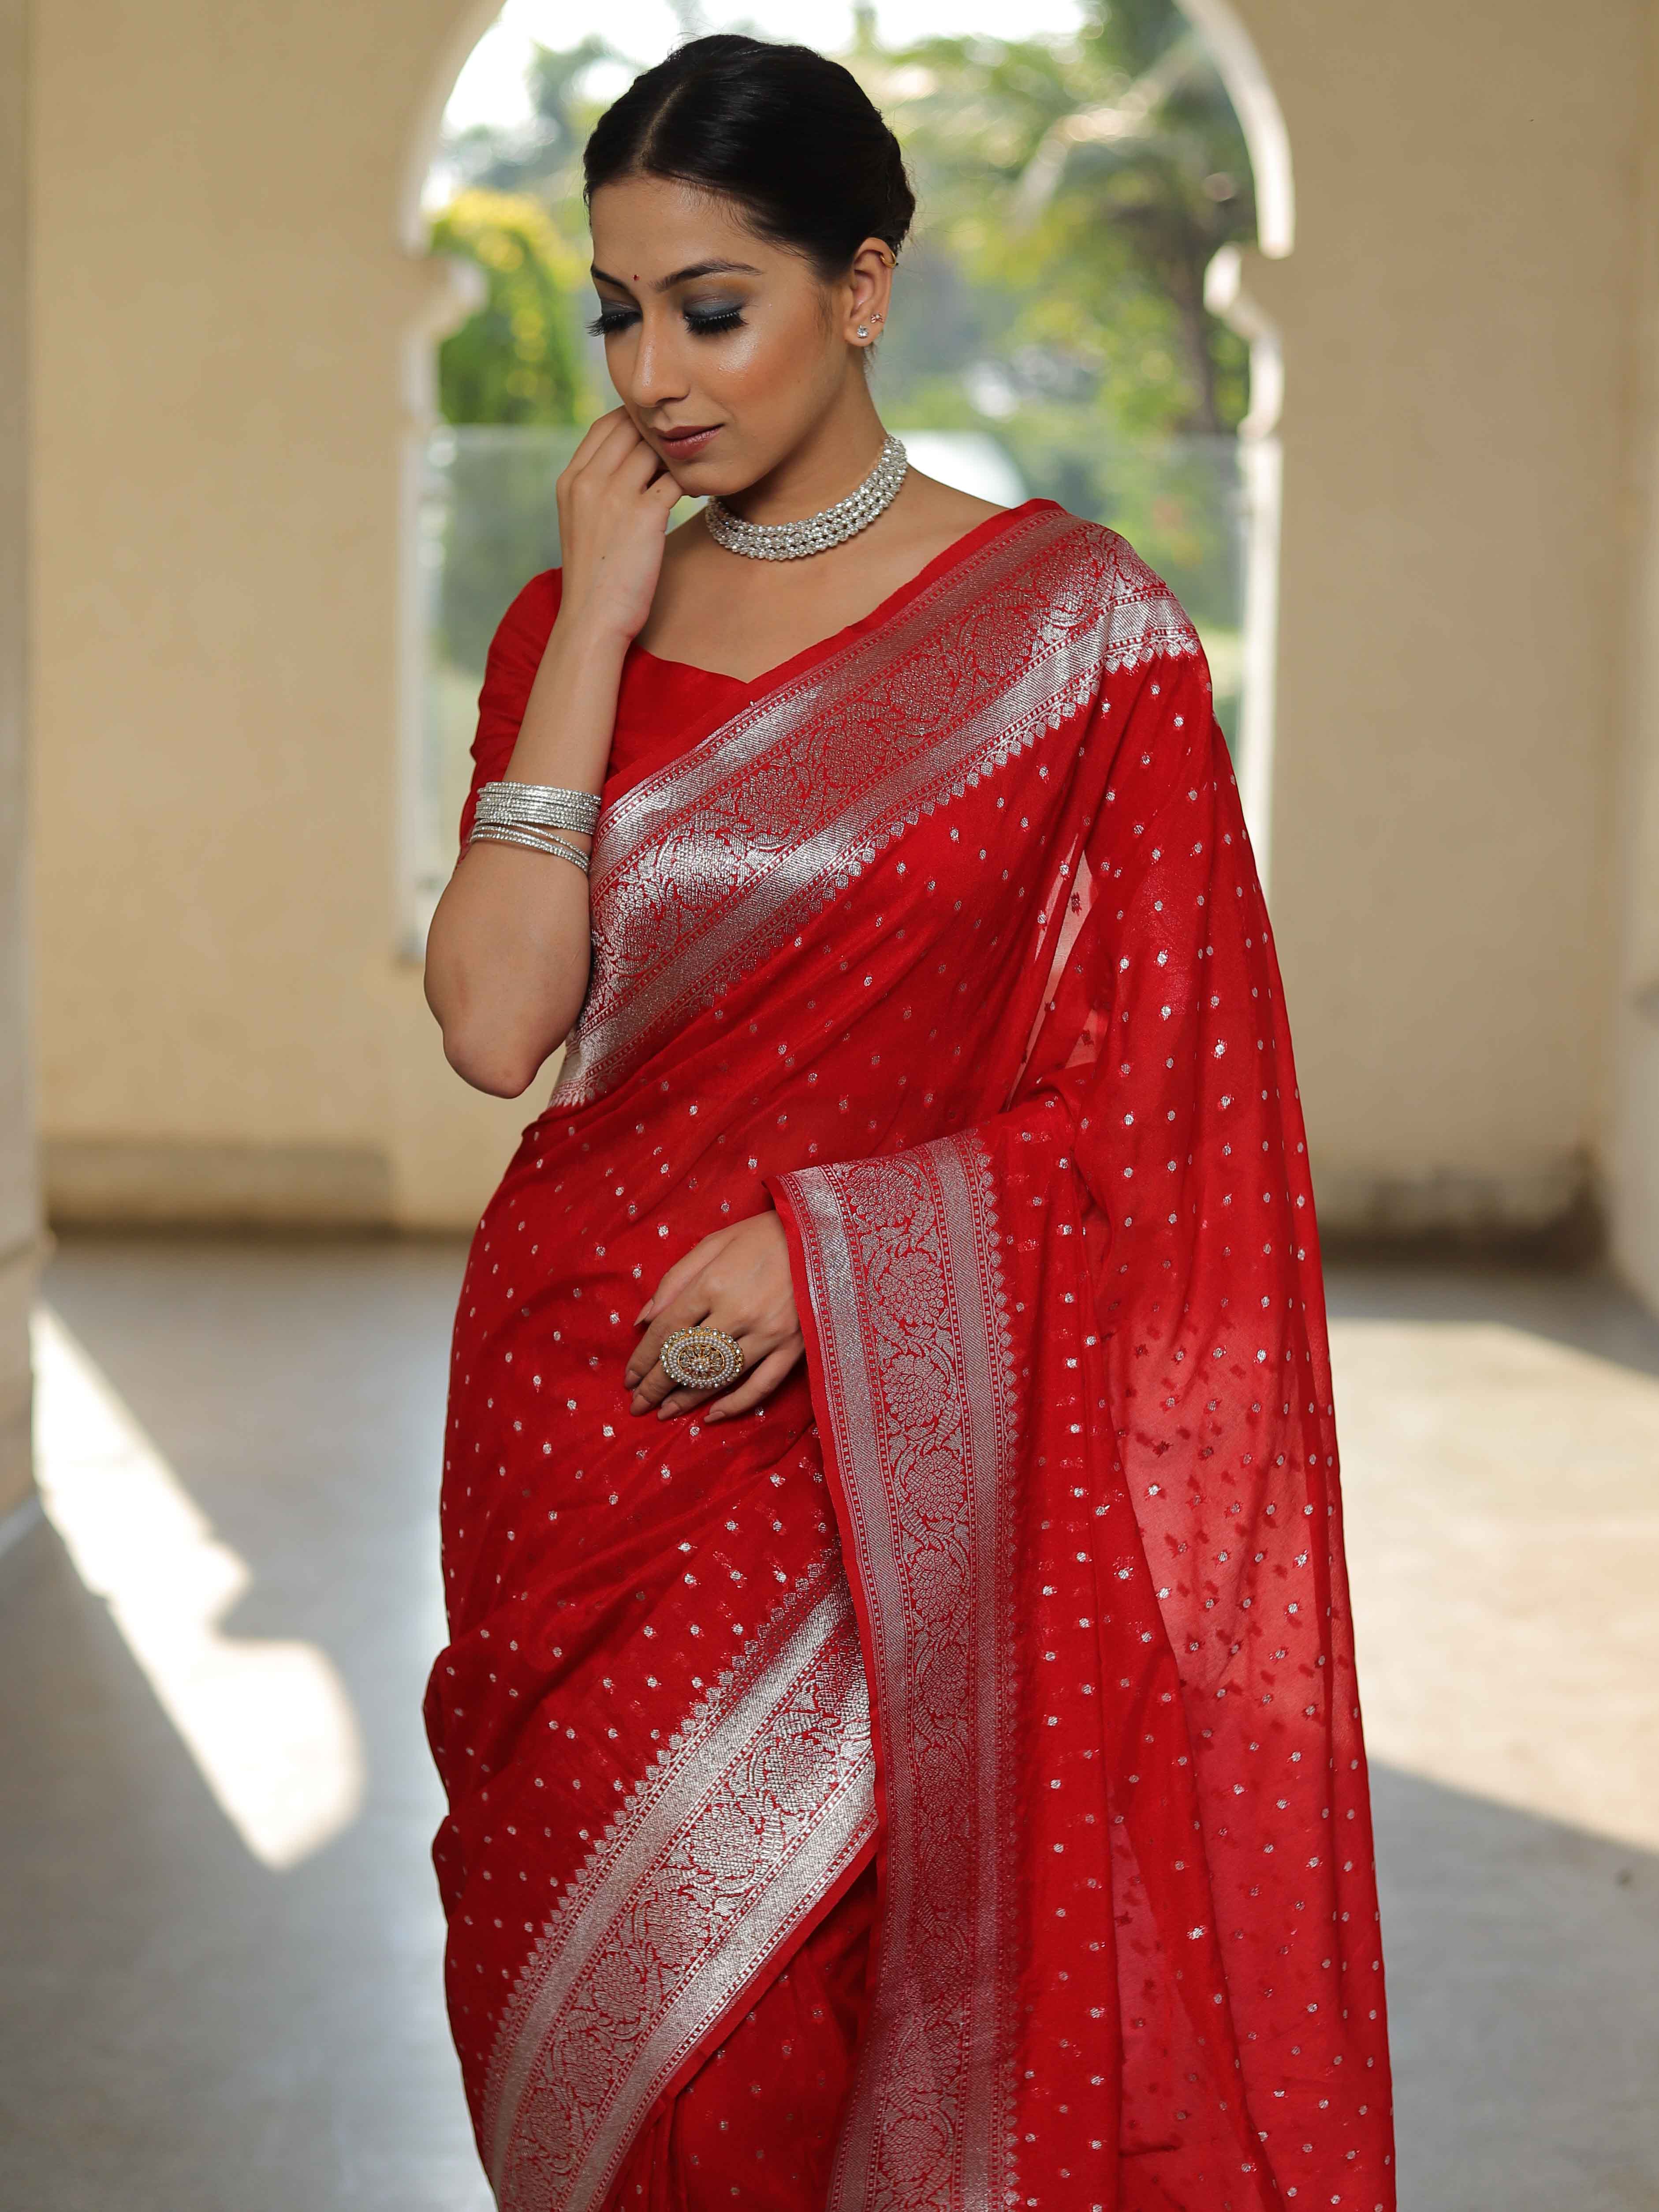 Banarasee Handwoven Faux Georgette Saree With Silver Zari Buti Design